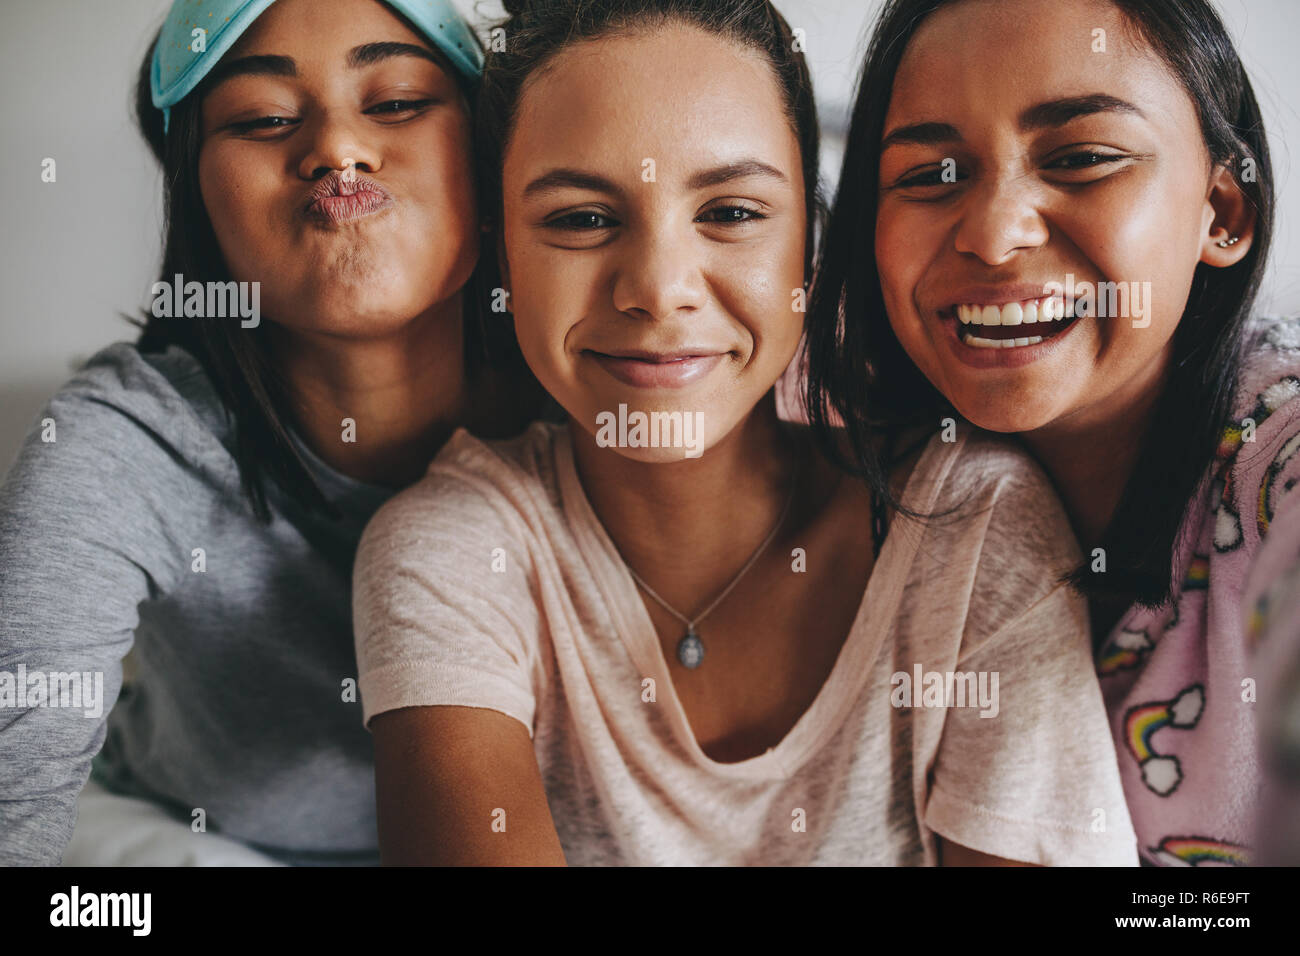 Drei junge Mädchen sitzen zusammen posieren für ein selfie während ein sleepover. Mädchen, die eine gute Zeit während einer Übernachtung. Stockfoto